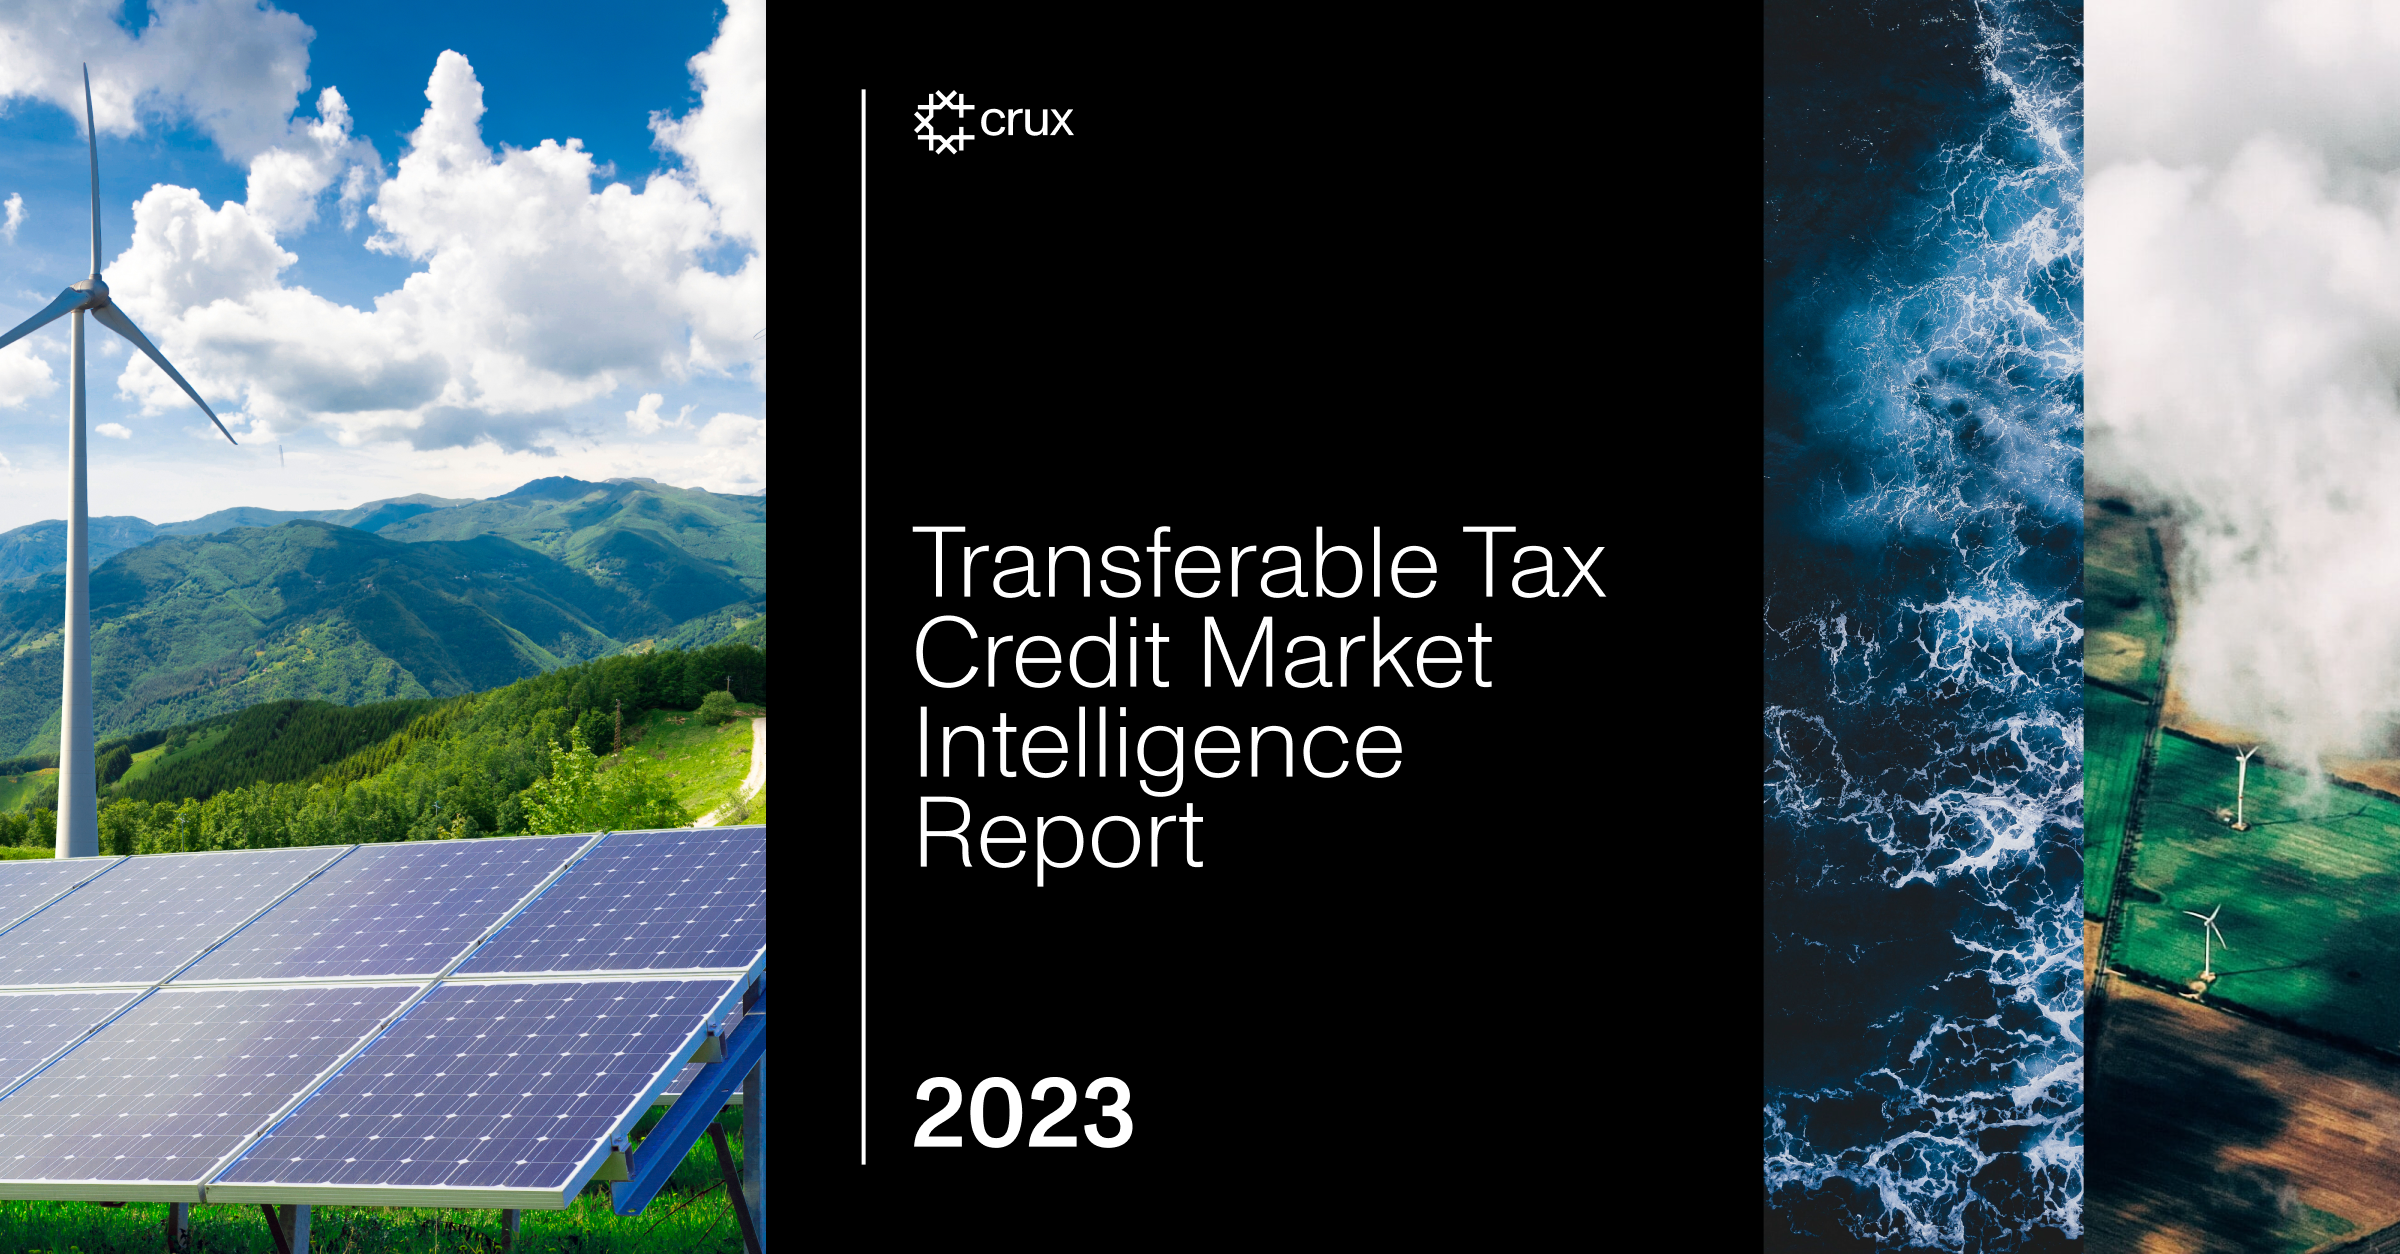 Crux 2023 クリーン エネルギー譲渡可能税額控除市場インテリジェンス レポート |グリーンビズ